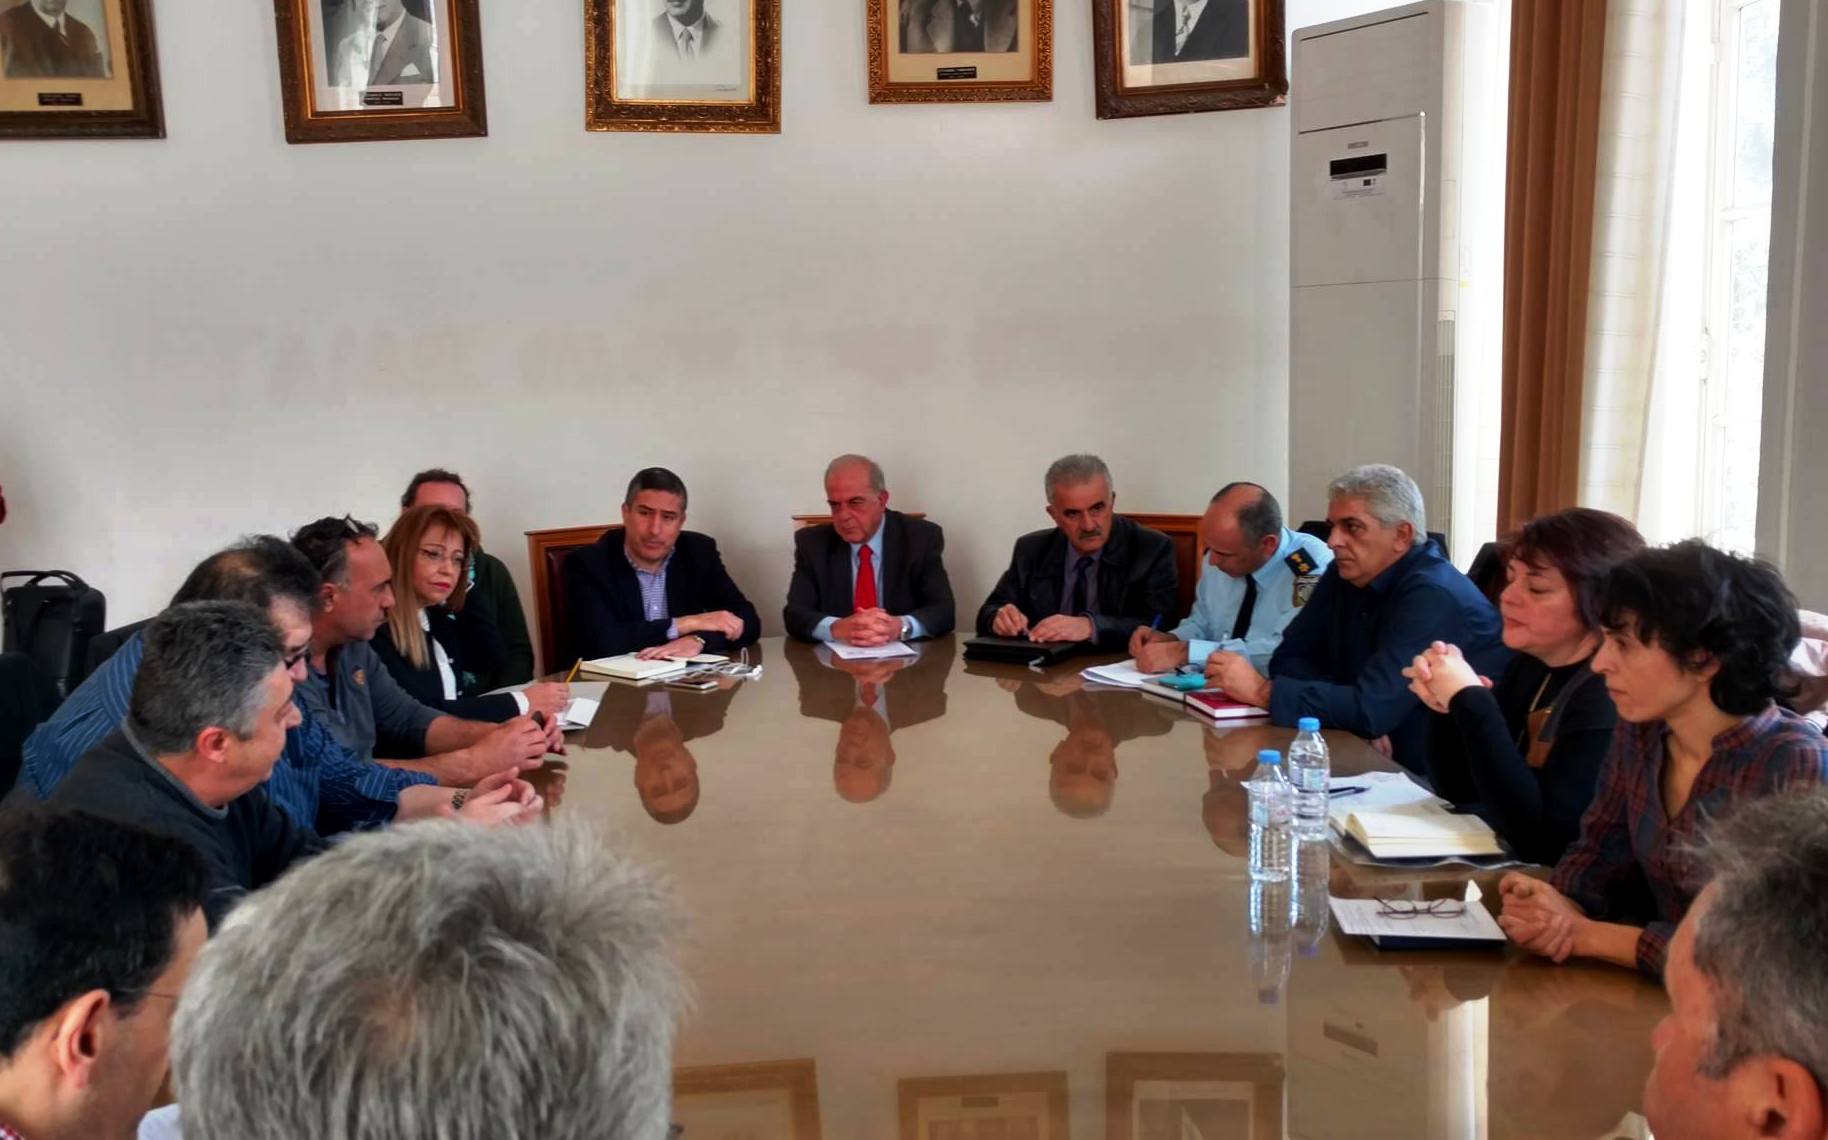 Σε θετικό κλίμα η σύσκεψη για τα αδέσποτα στον Δήμο Ηρακλείου παρά τις αντιδράσεις (pics)